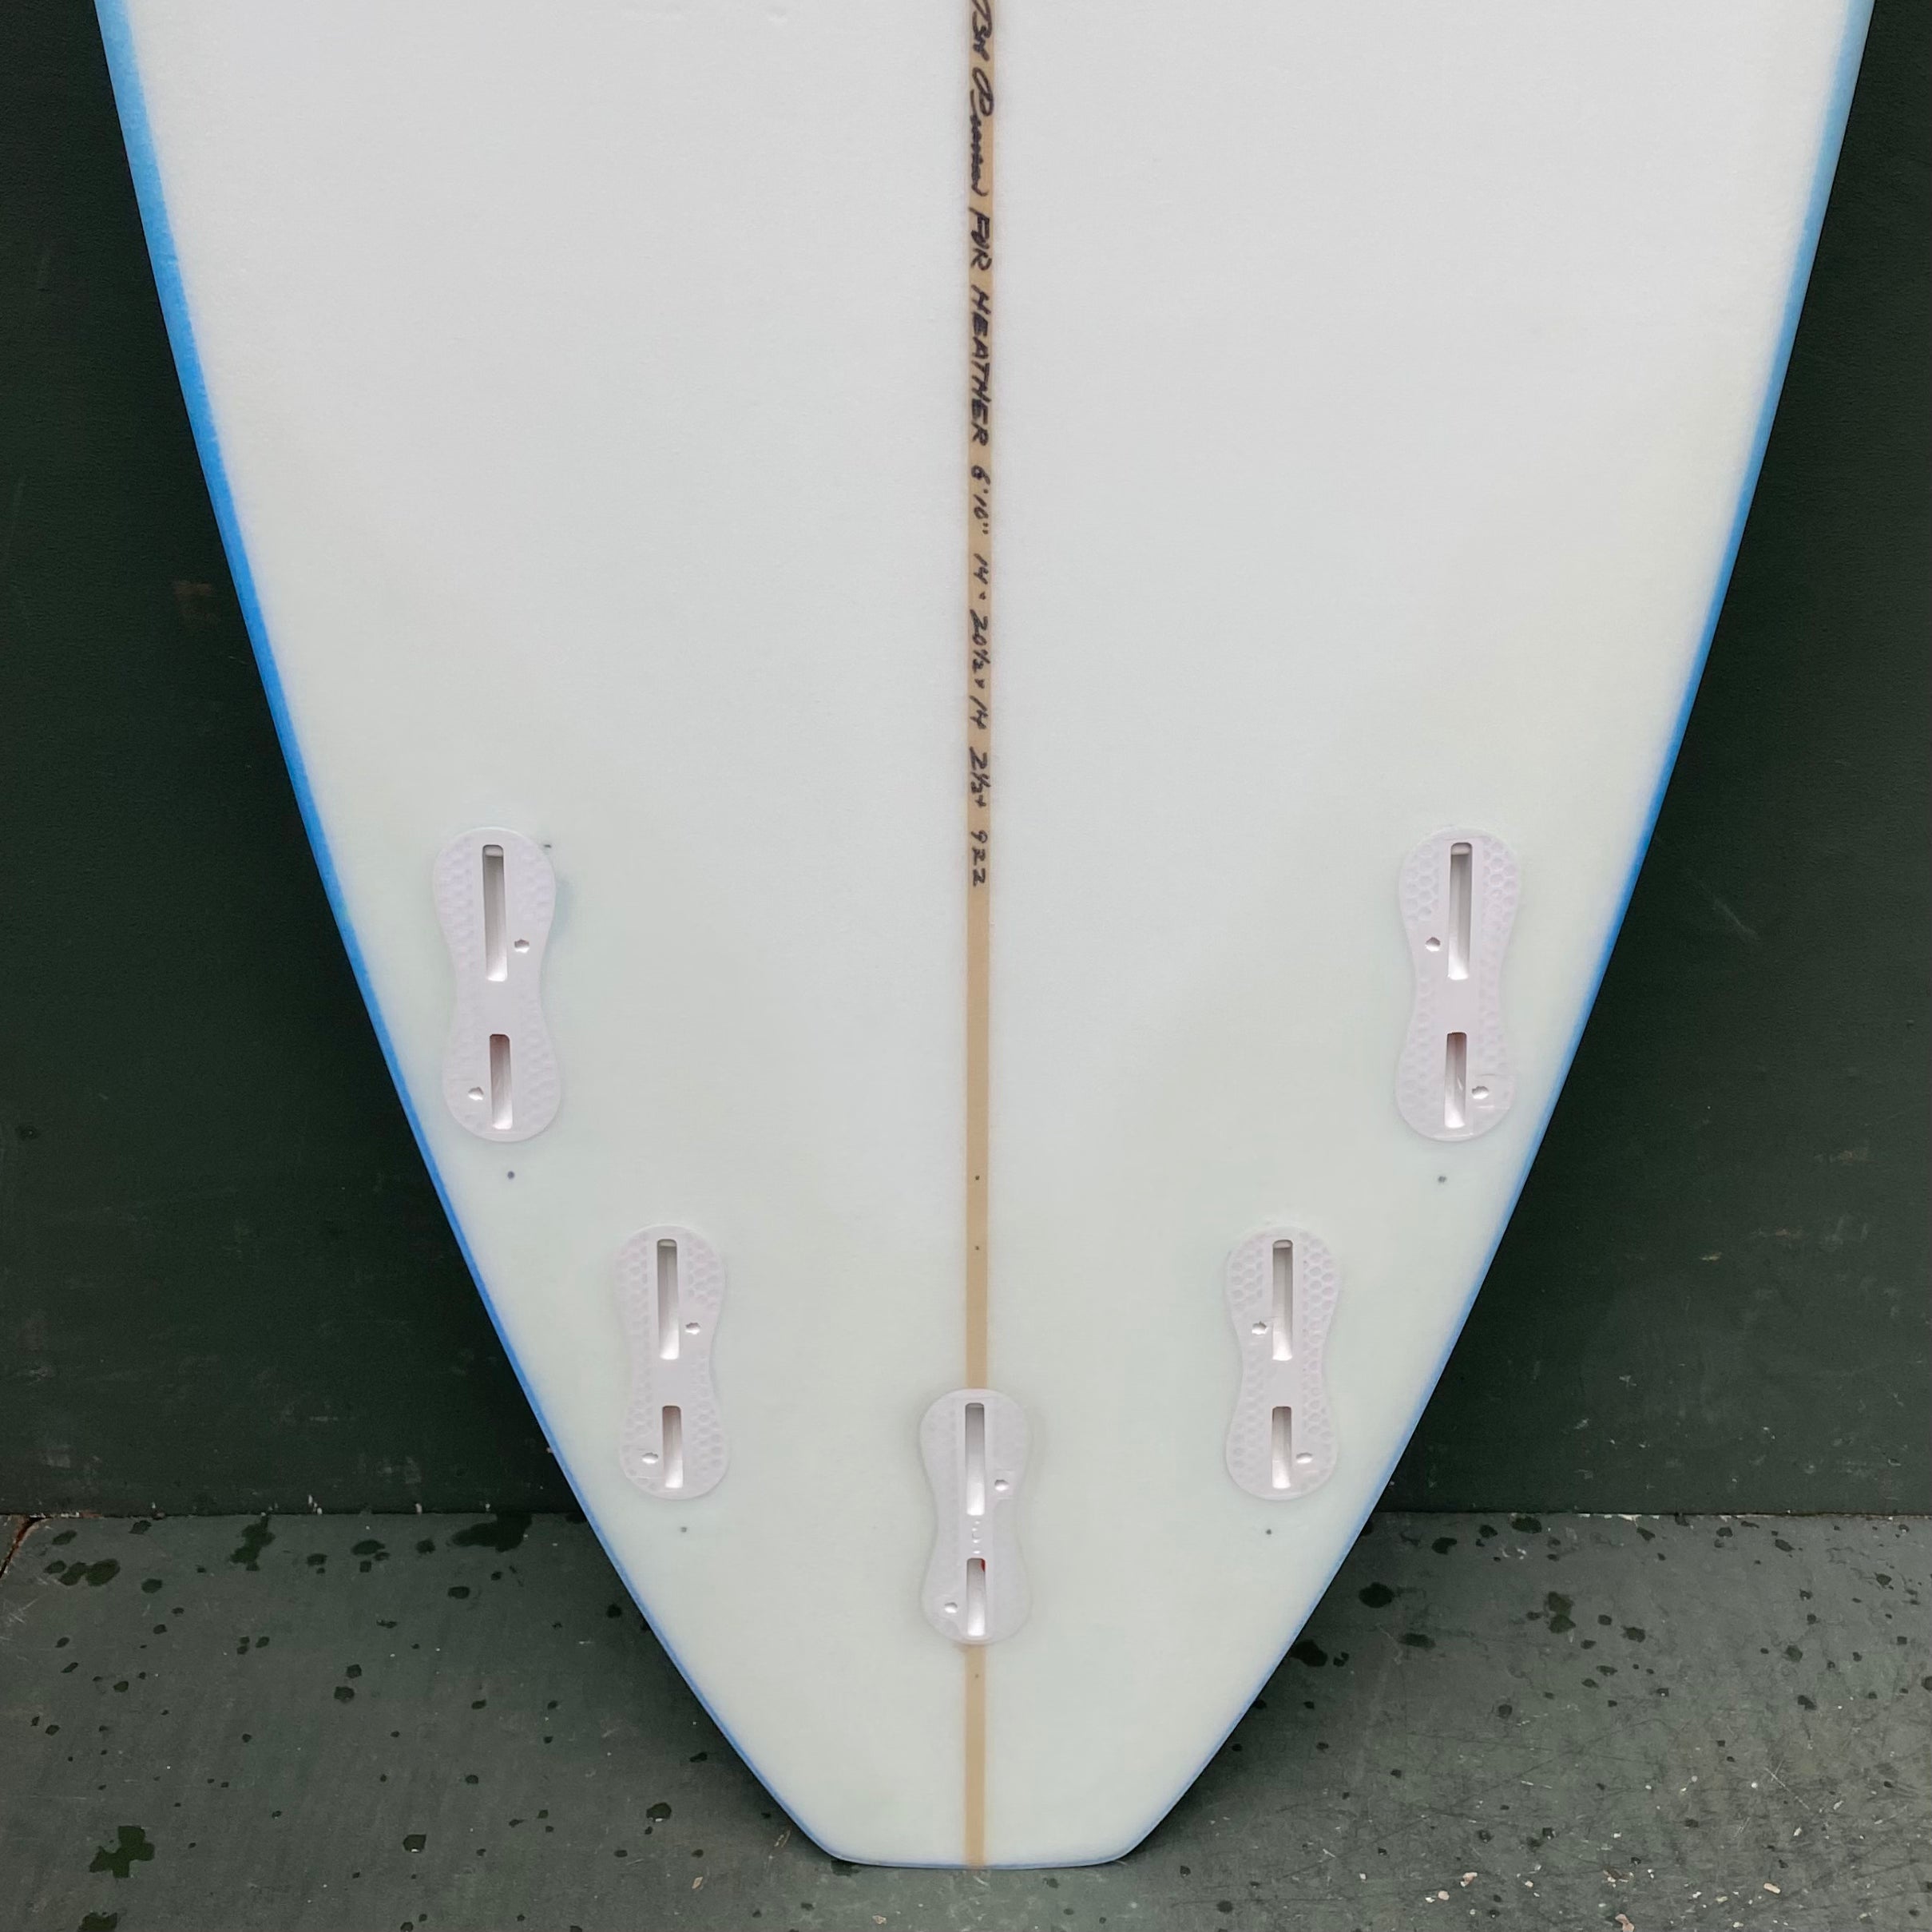 Pearson Arrow Surfboards - 6'10" Hybrid Surfboard - EPS - Seaside Surf Shop 